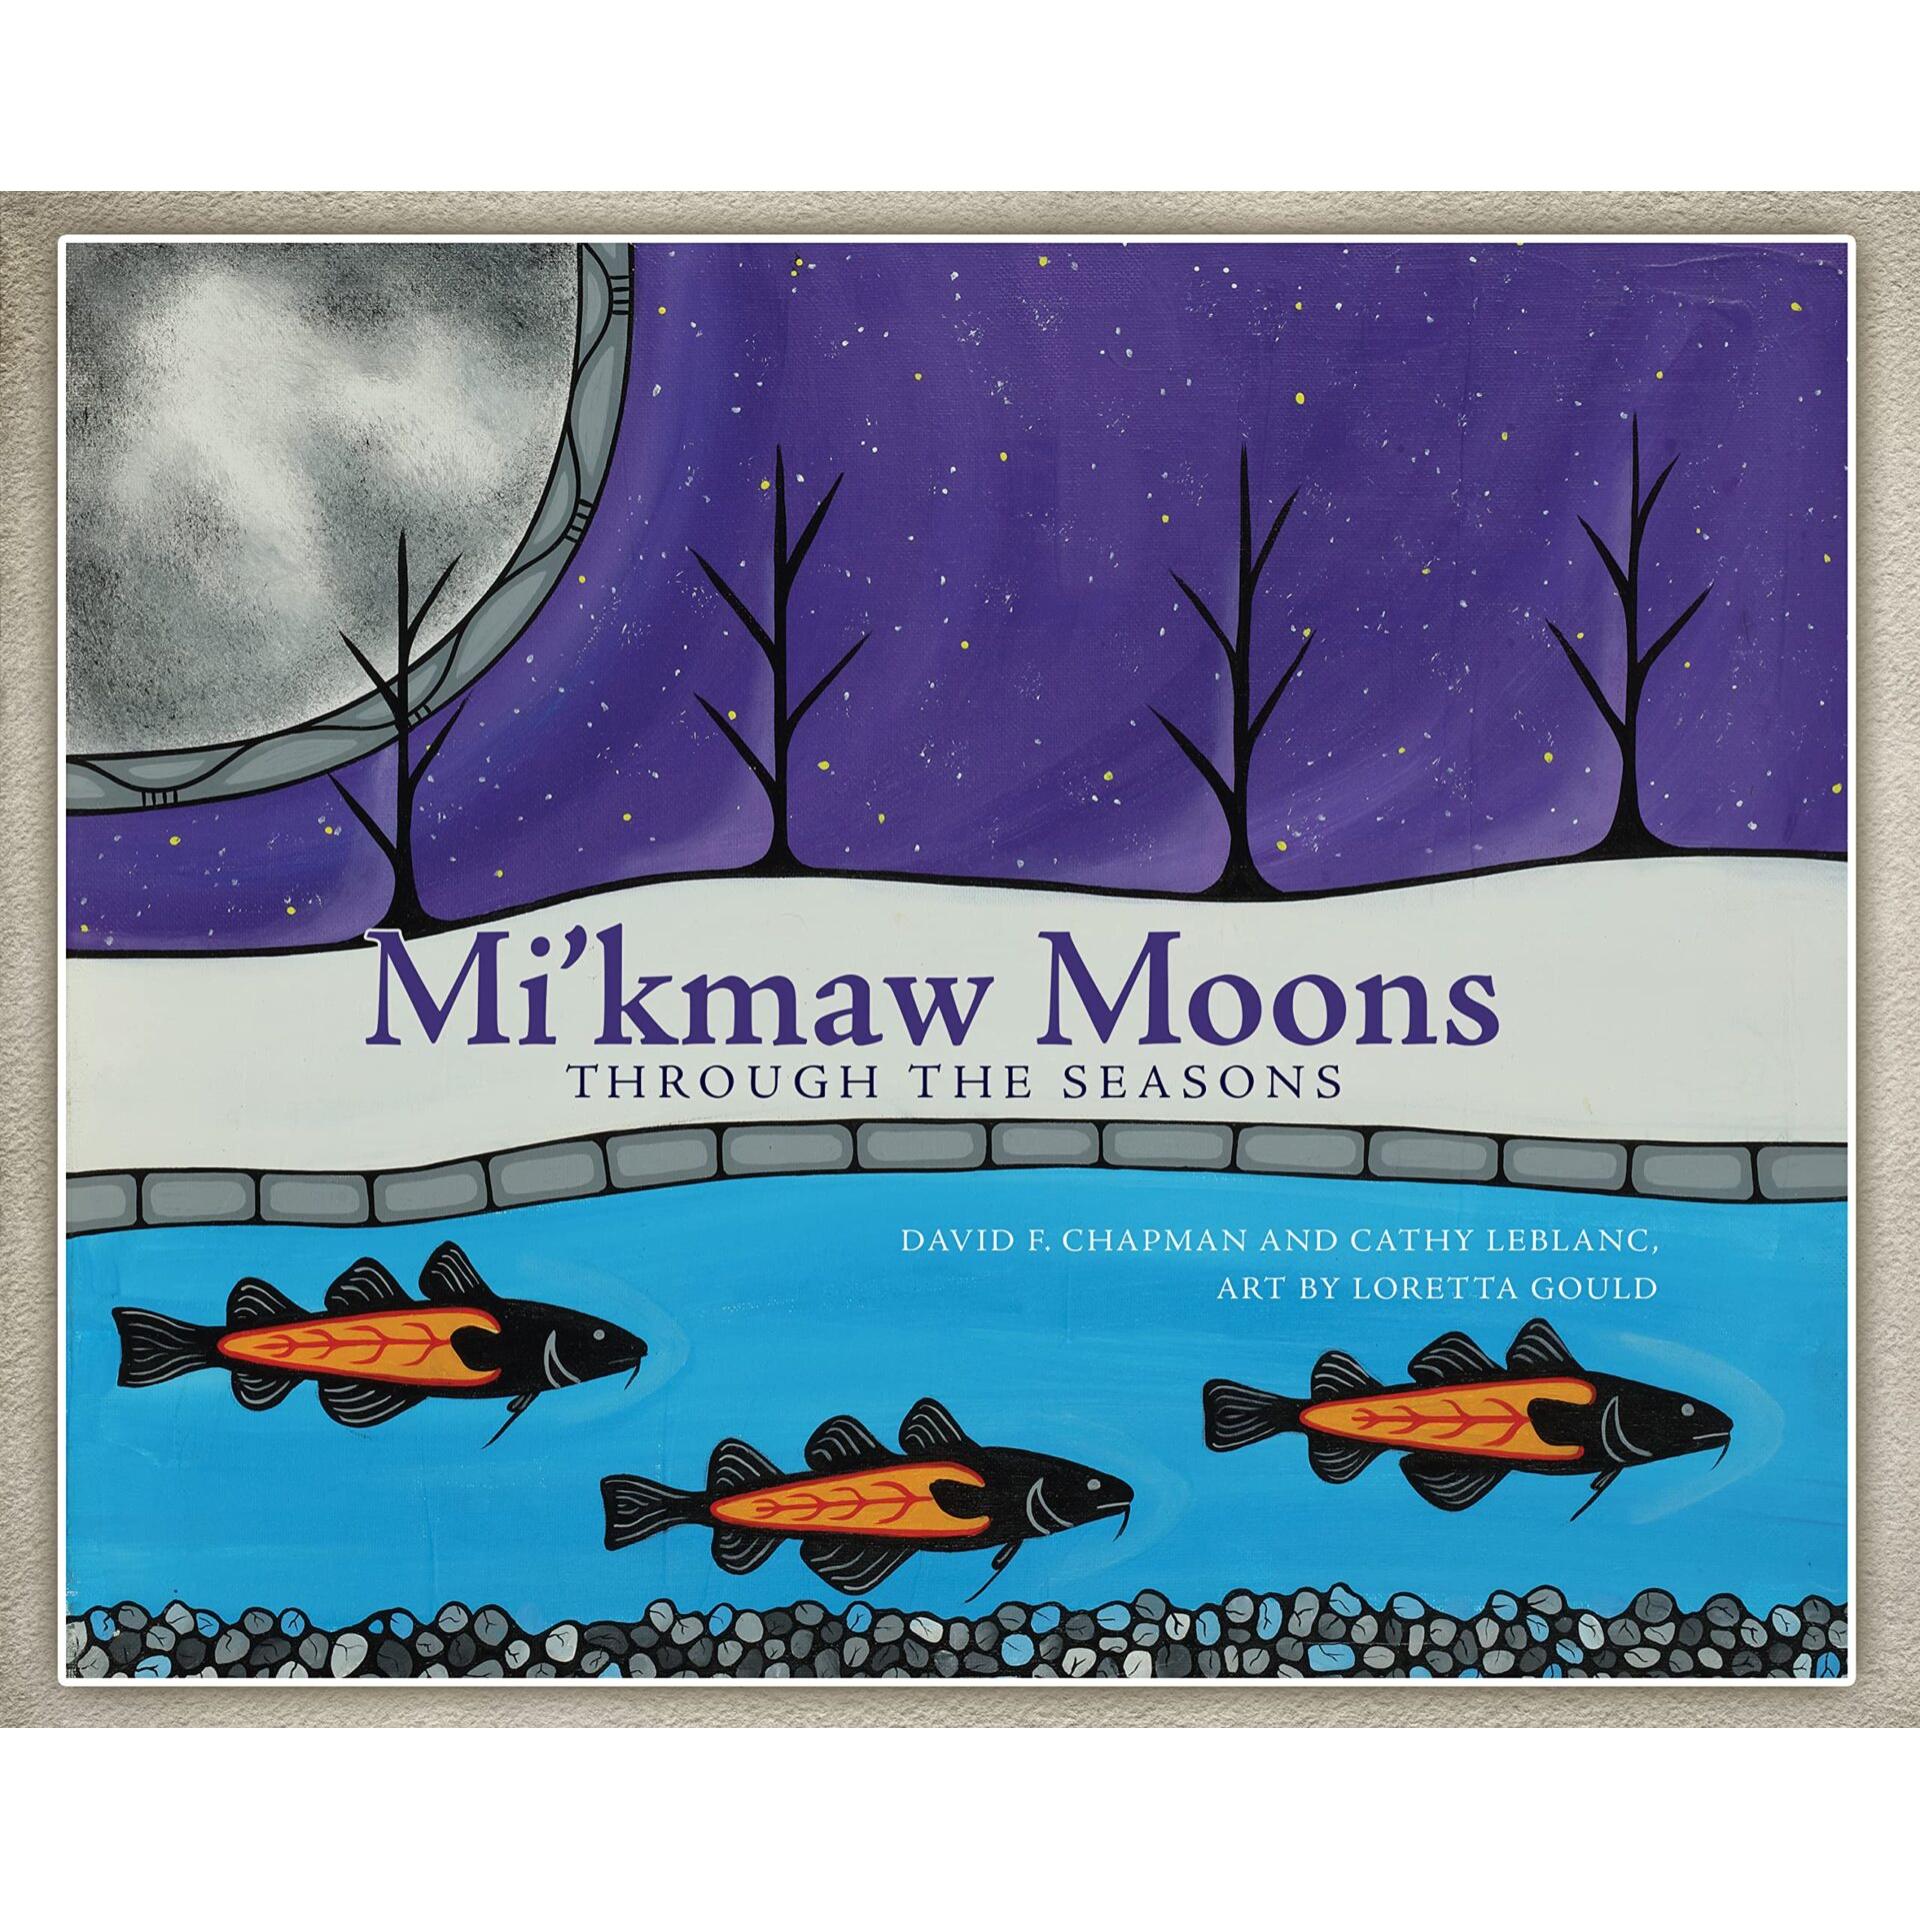 Mi’kmaw Moons: The Seasons in Mi'kma'ki